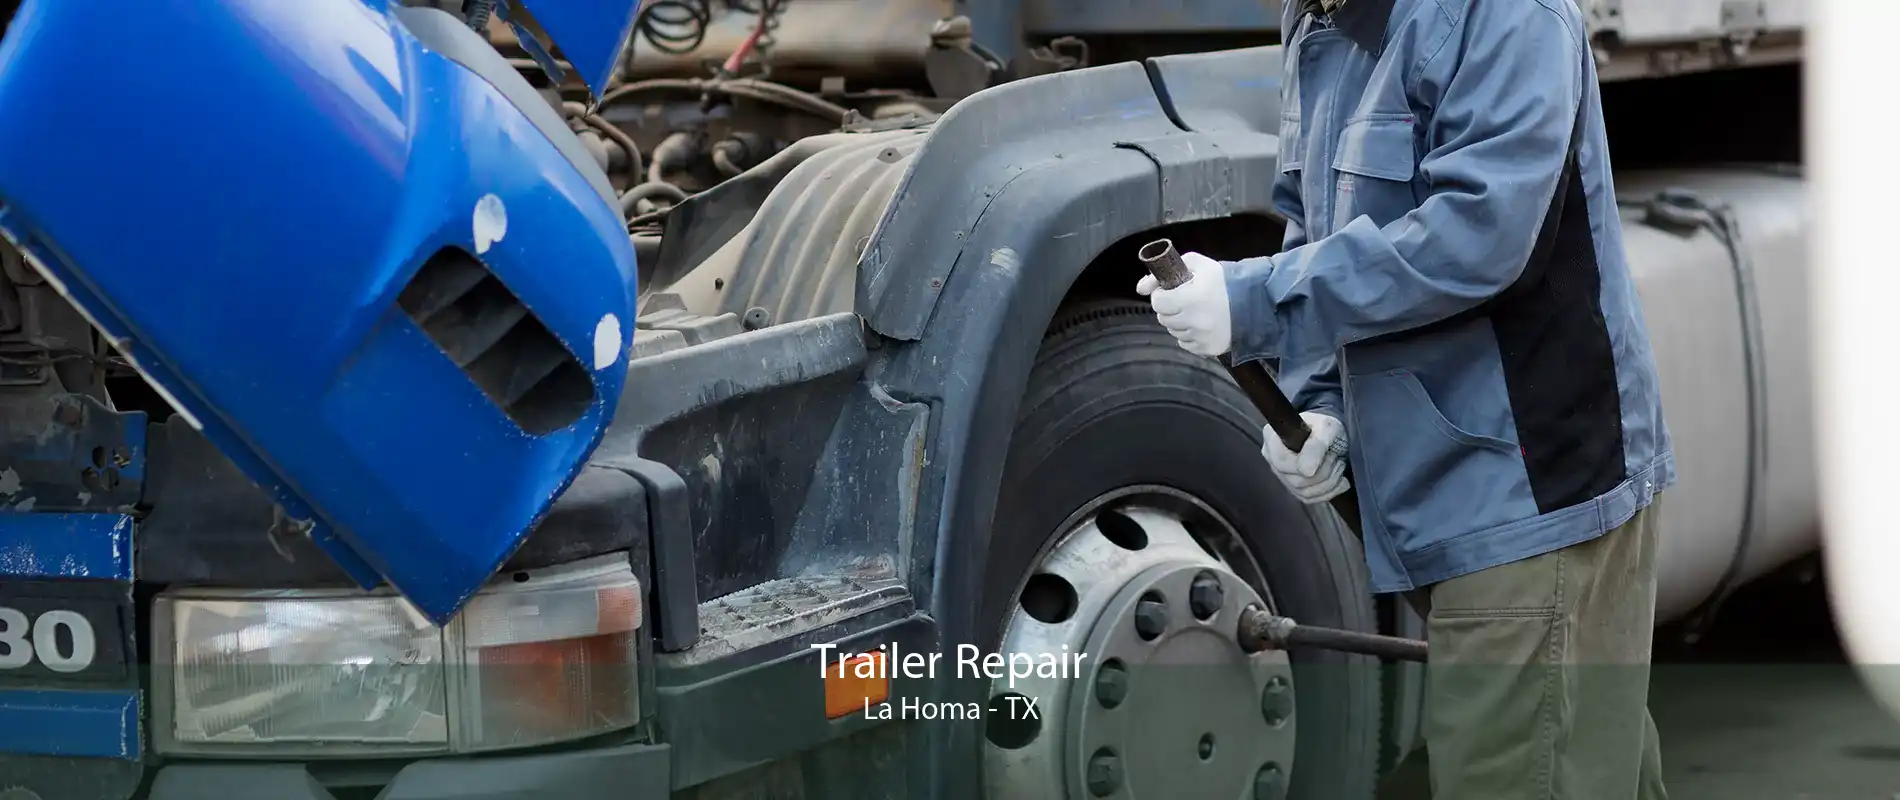 Trailer Repair La Homa - TX